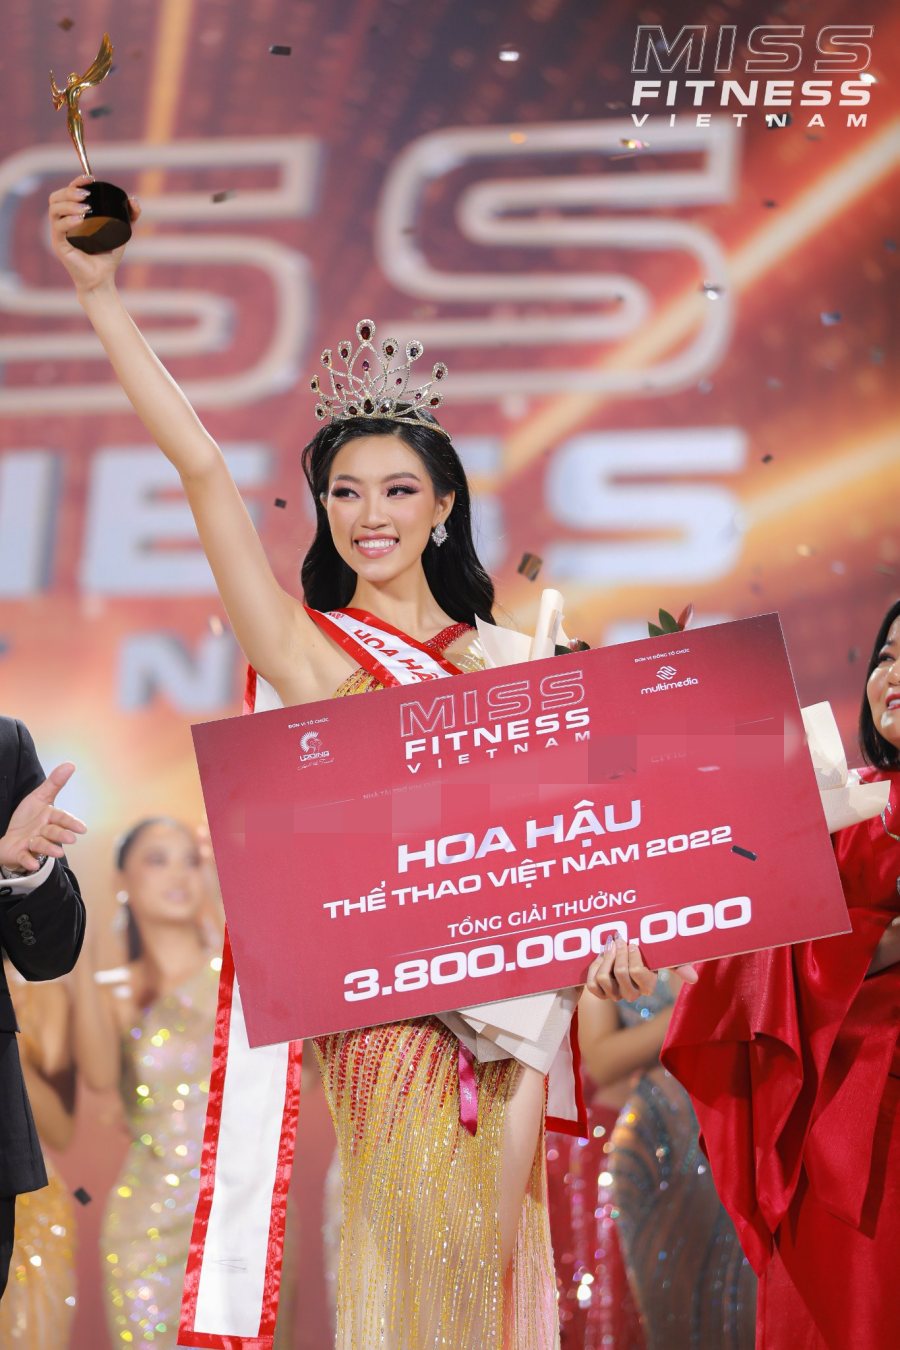 Đoàn Thu Thuỷ nhận được giá trị giải thưởng lên tới 3,8 tỷ đồng cho ngôi vị hoa hậu.